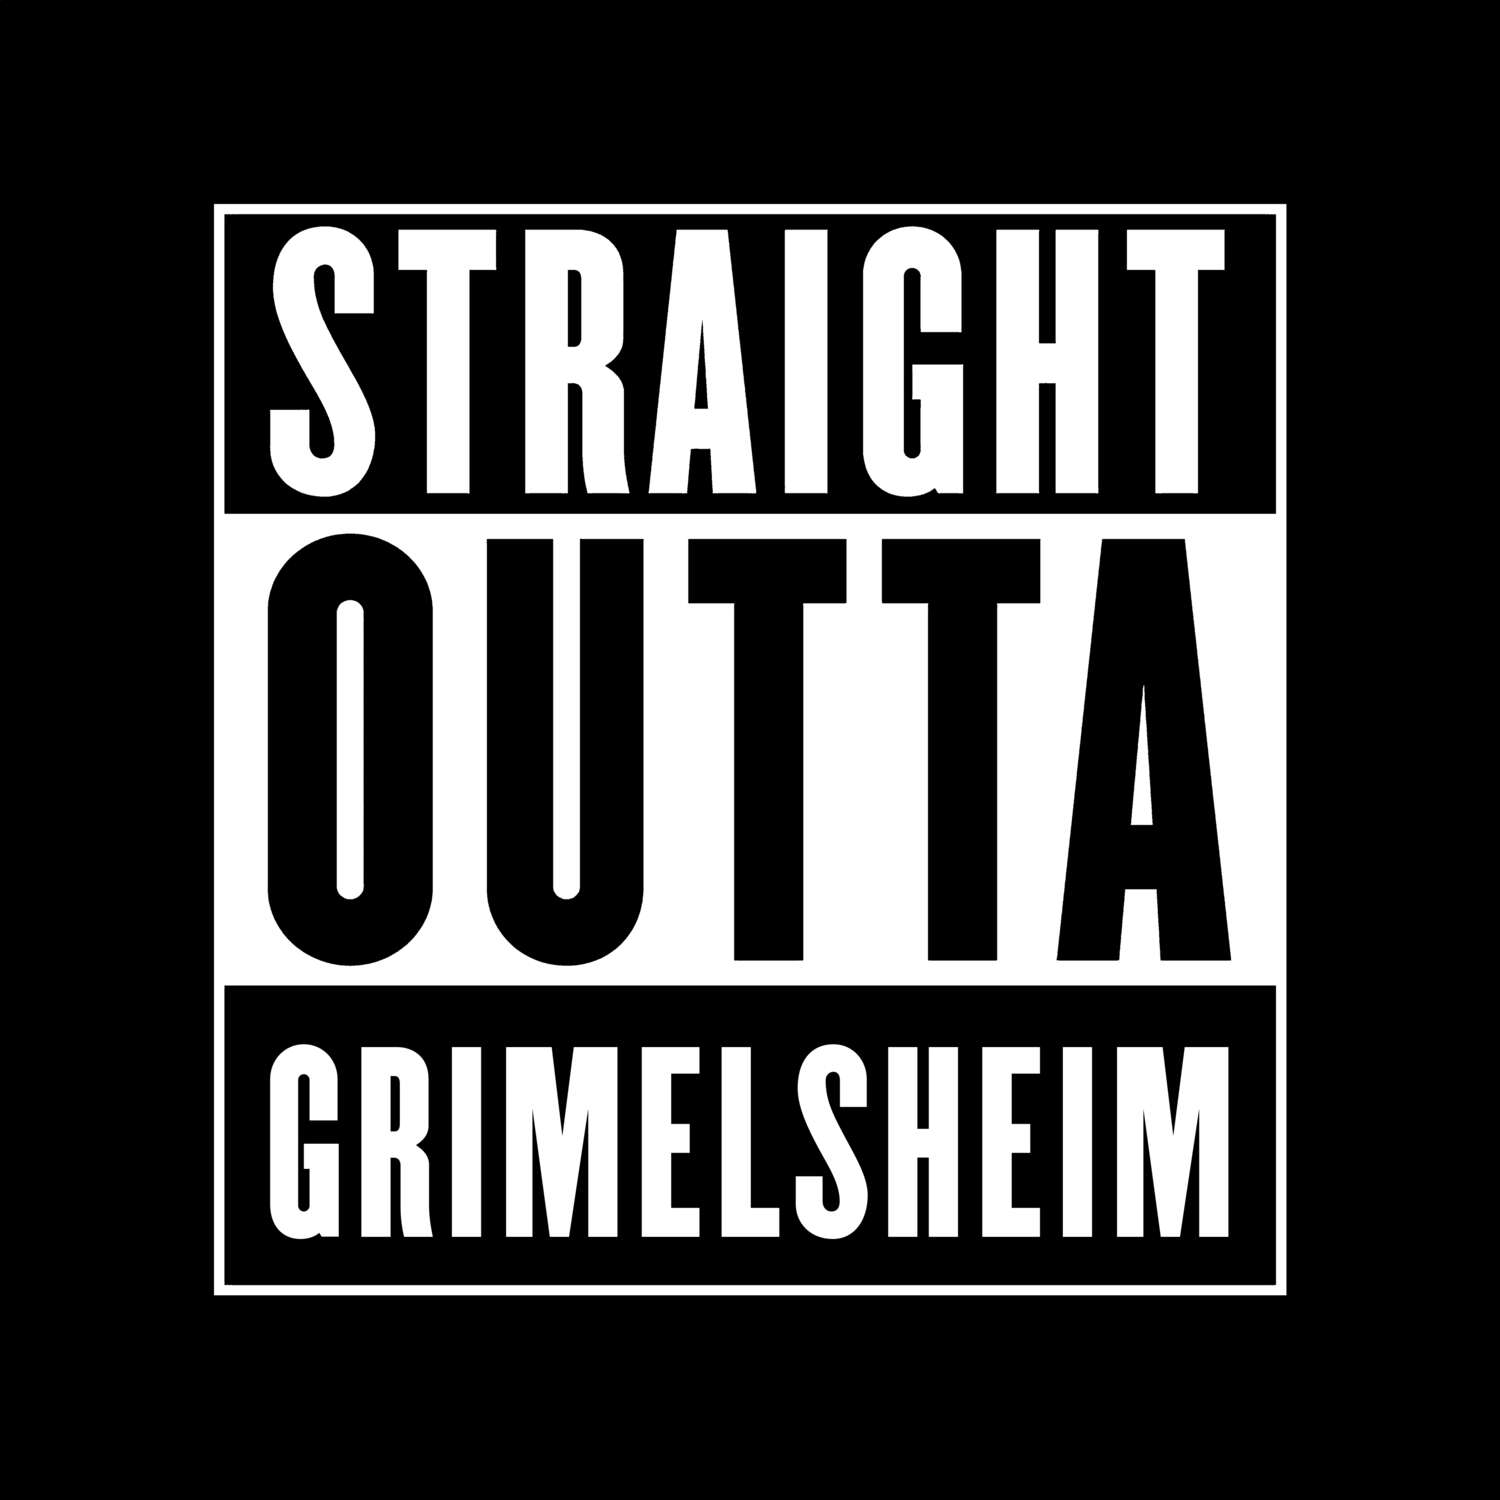 Grimelsheim T-Shirt »Straight Outta«